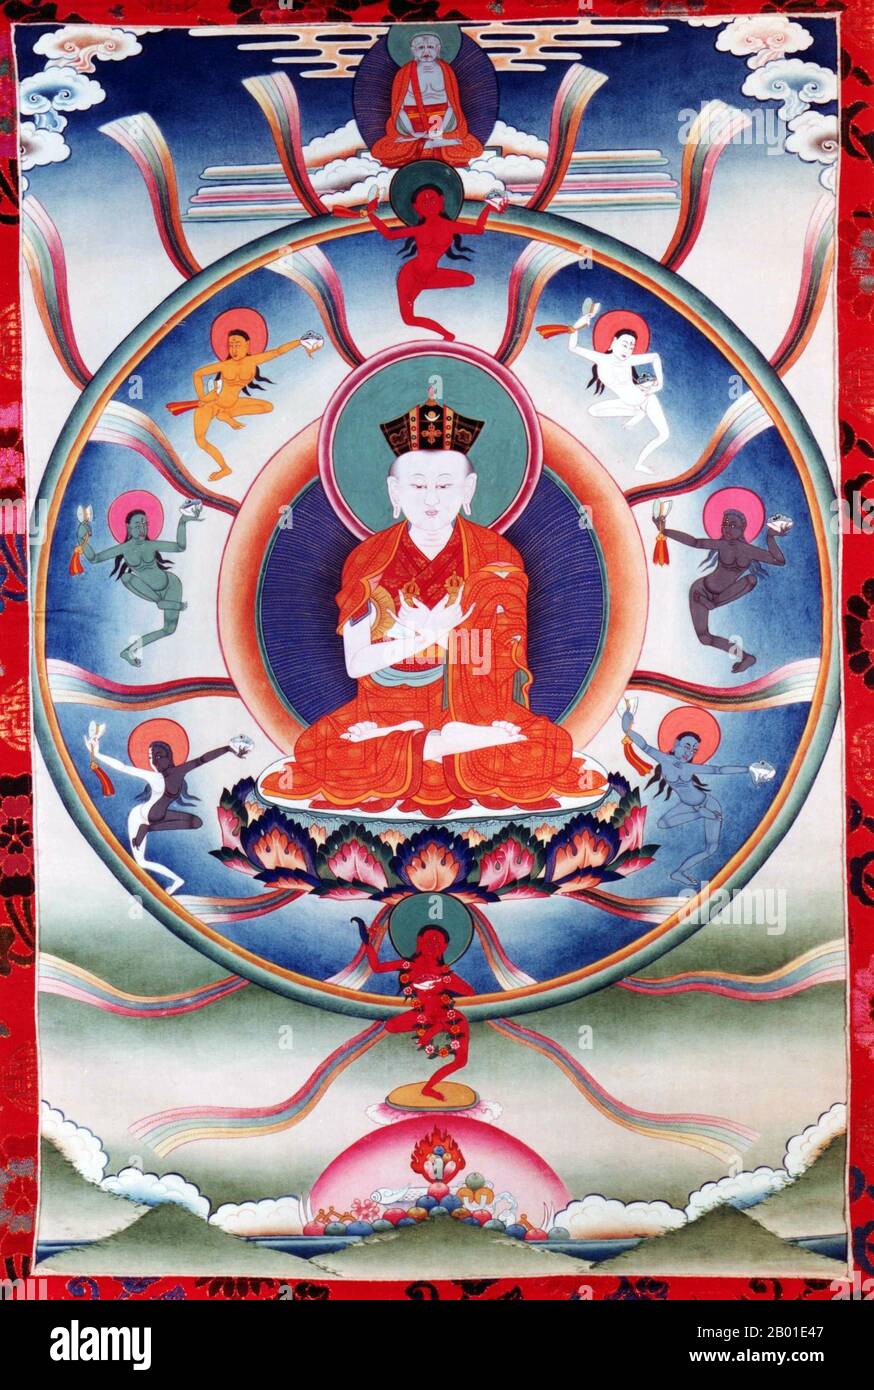 China/Tibet: Miko Dorje (1507-1554), der 8. Karmapa Lama. Thankga-Gemälde, 20. Jahrhundert. Mikyö Dorje/Mikyo Dorje war der achte Gyalwa Karmapa, Leiter der Kagyu-Schule für den tibetischen Buddhismus. Mikyö Dorje wurde in Satam, Kham, geboren. Der Legende nach sagte er nach seiner Geburt: "Ich bin Karmapa" und wurde von Tai Situpa anerkannt. In diesem Fall gab es ein weiteres Kind aus Amdo, das auch behauptete, Karmapa zu sein. Gyaltsab Rinpoche, der Regente der Region, dachte an einen Test, um zu entscheiden, wer das wahre Karmapa ist. Dies war das erste Mal, dass ein Test verwendet wurde, um eine Reinkarnation zu bestimmen. Stockfoto